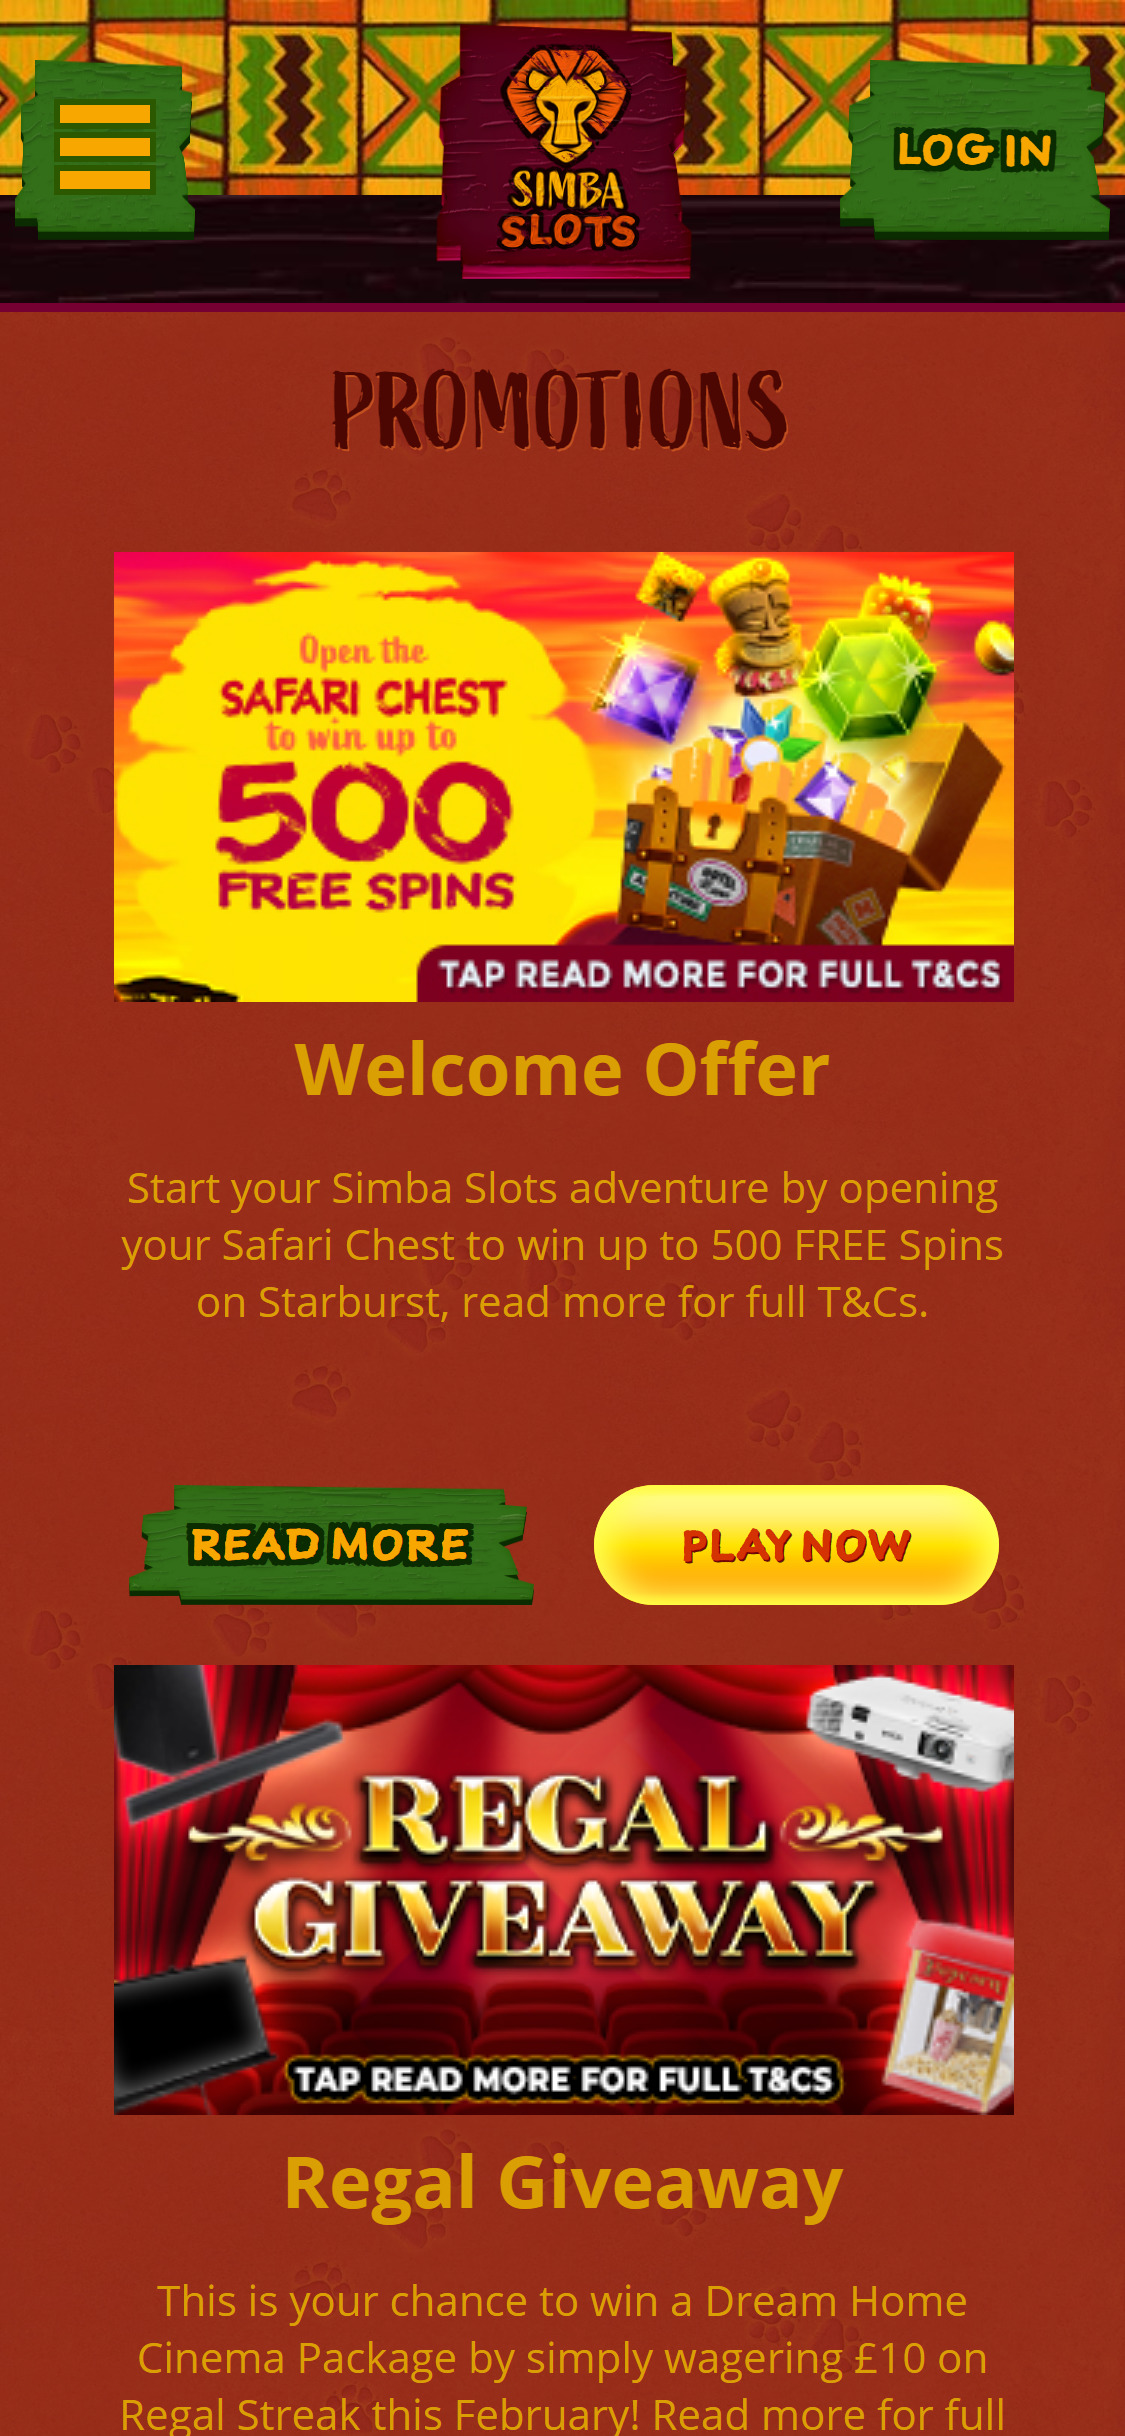 Simba Slots Casino Mobile No Deposit Bonus Review